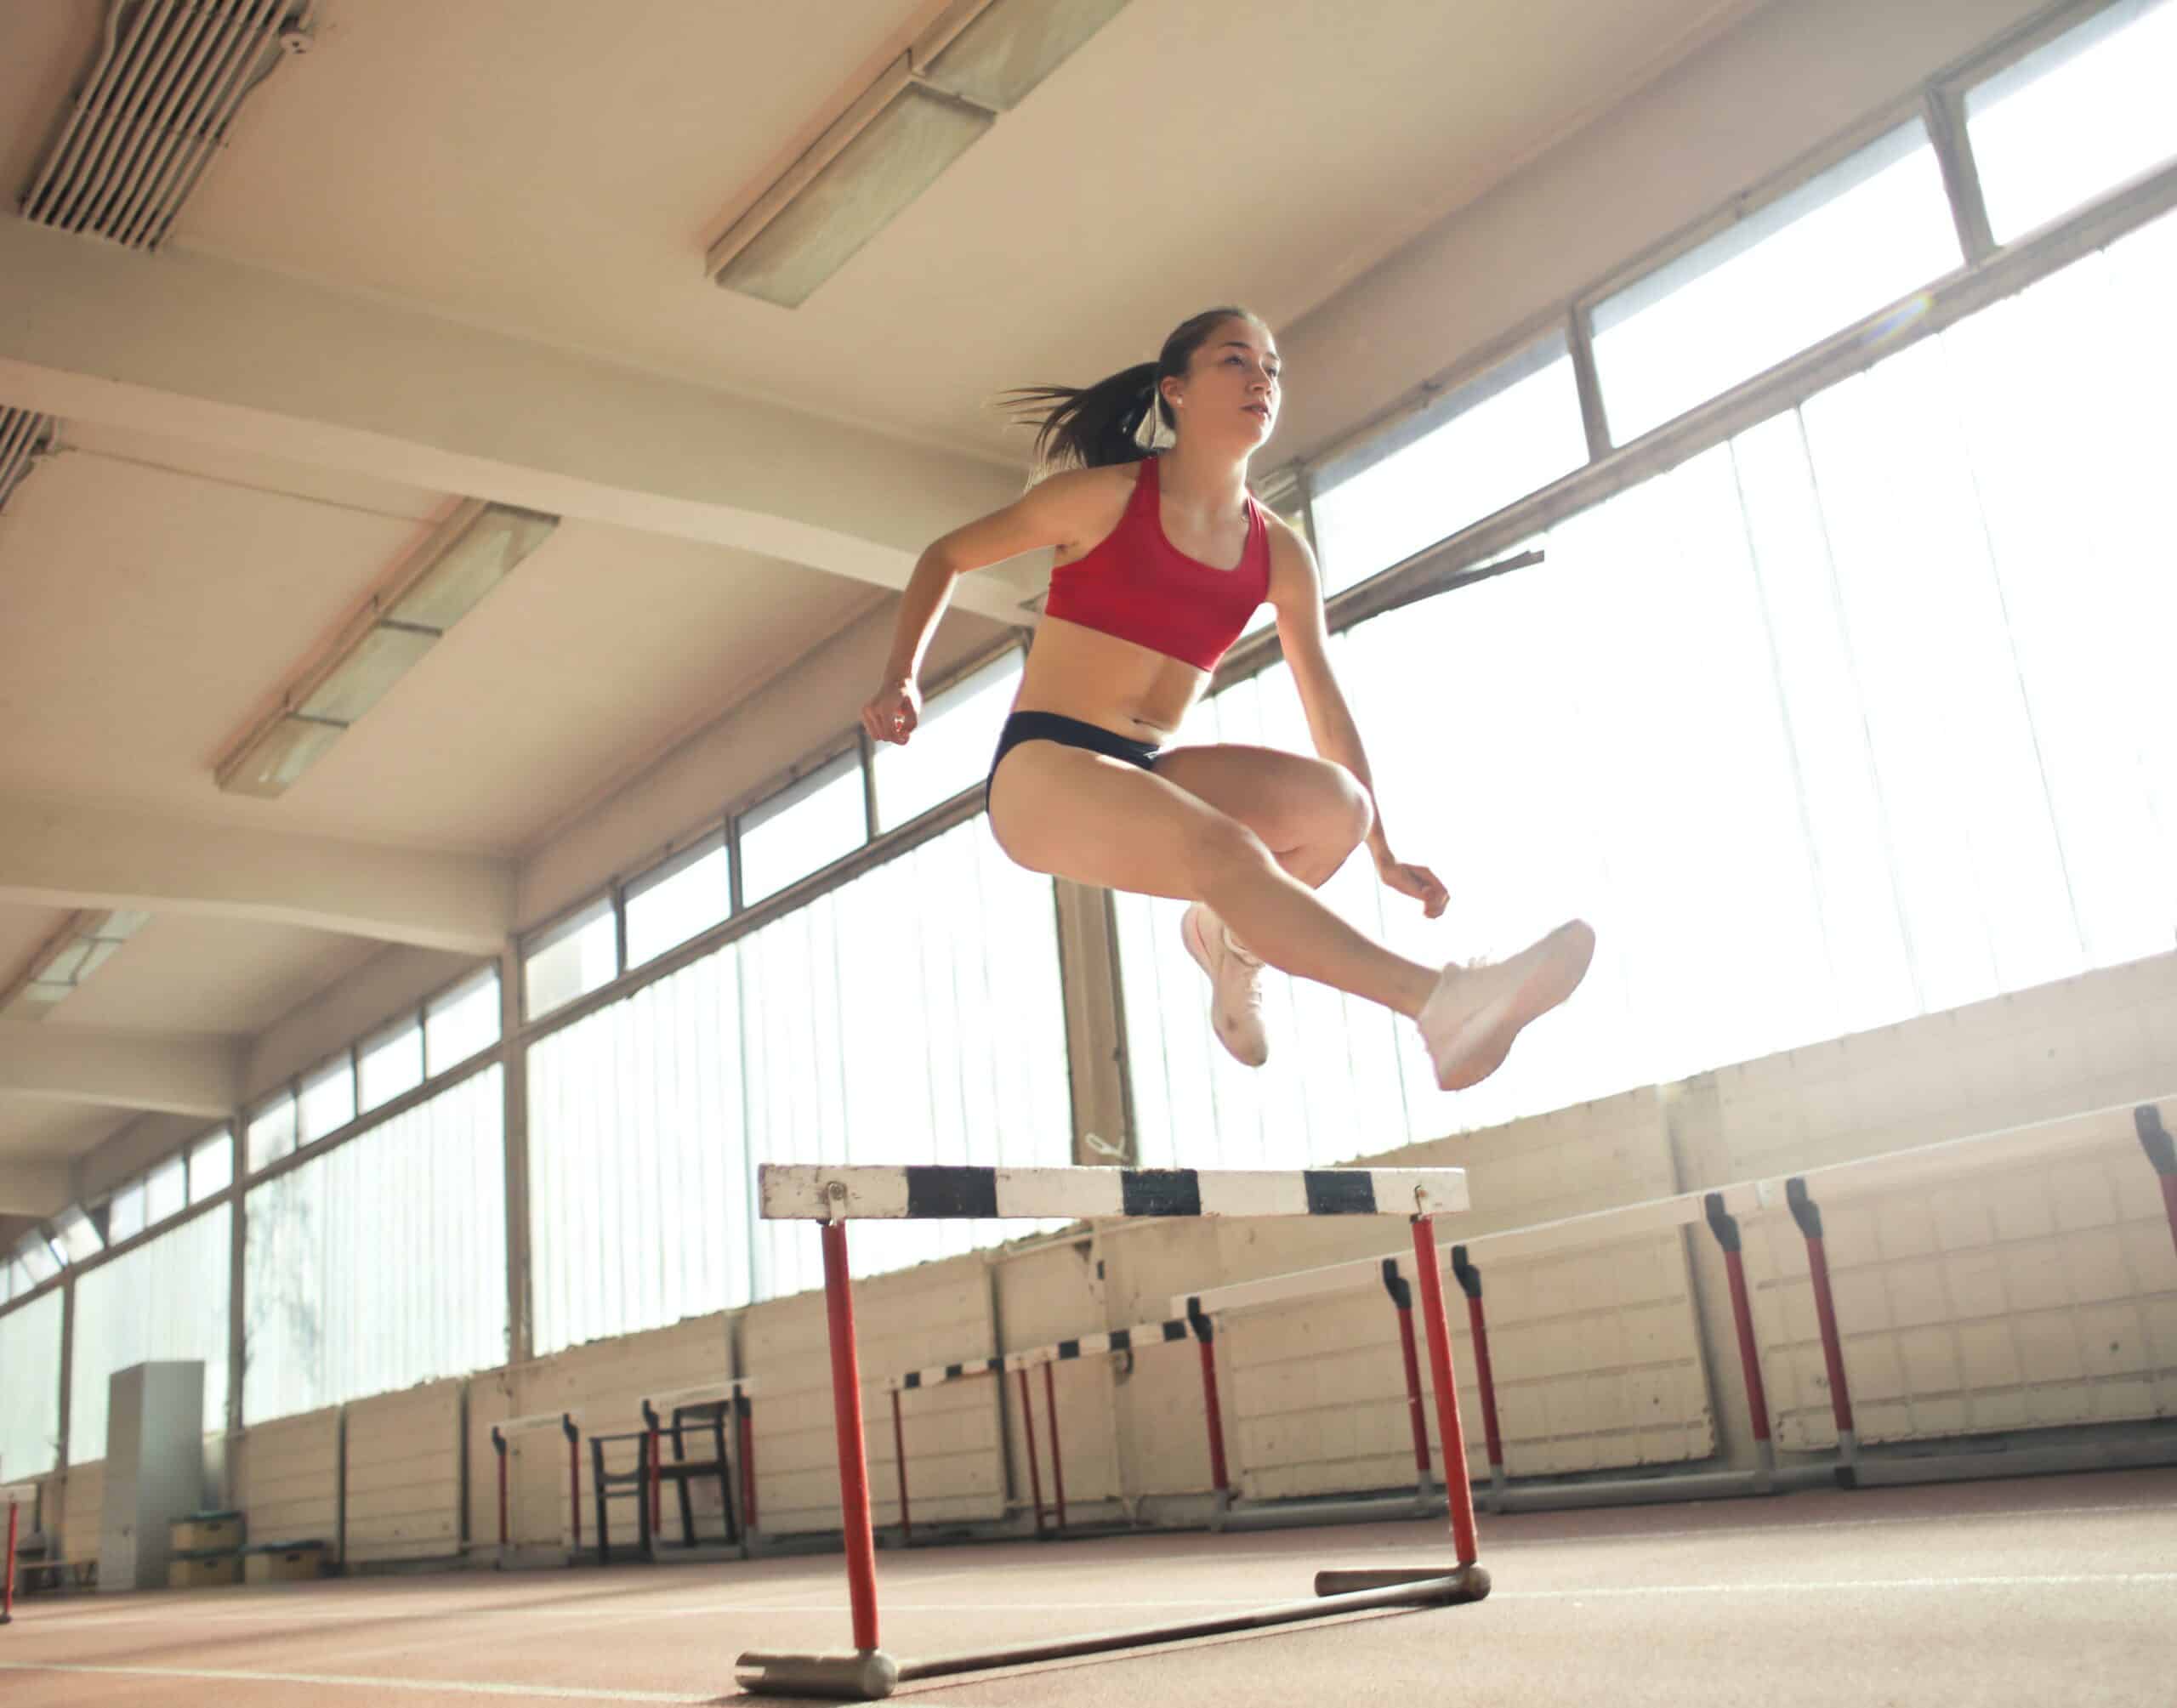 Ilustrasi Perempuan Gak Bisa Keren dalam Dunia Olahraga? Salah Besar!/Photo by Andrea Piacquadio: https://www.pexels.com/photo/photo-of-a-woman-jumped-on-obstacle-3764164/